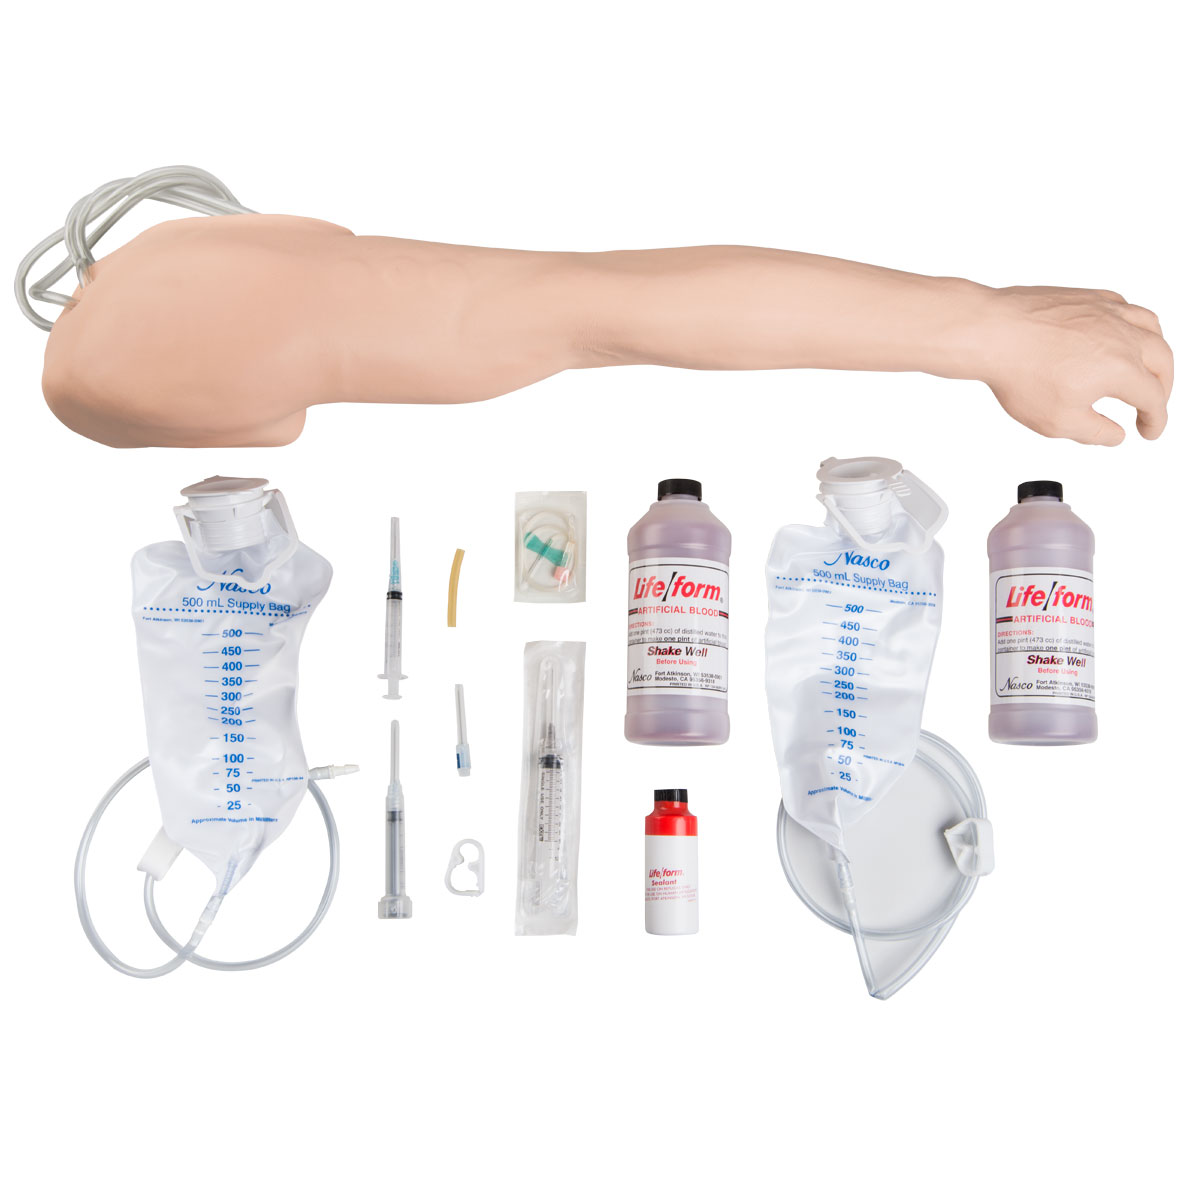 Усовершенствованный тренажер для венопункции и инъекции, рука